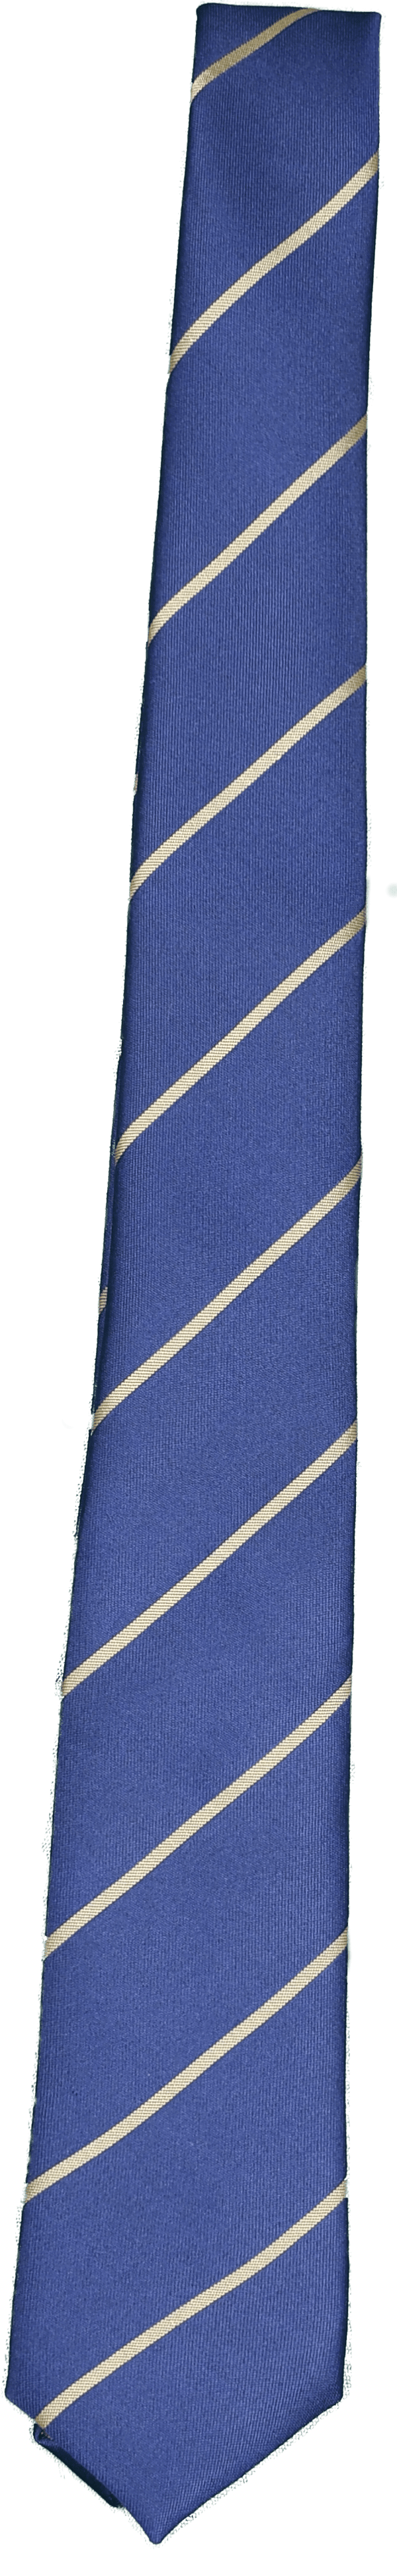 gubbacciuniforms 22 Bhoomi School Tie